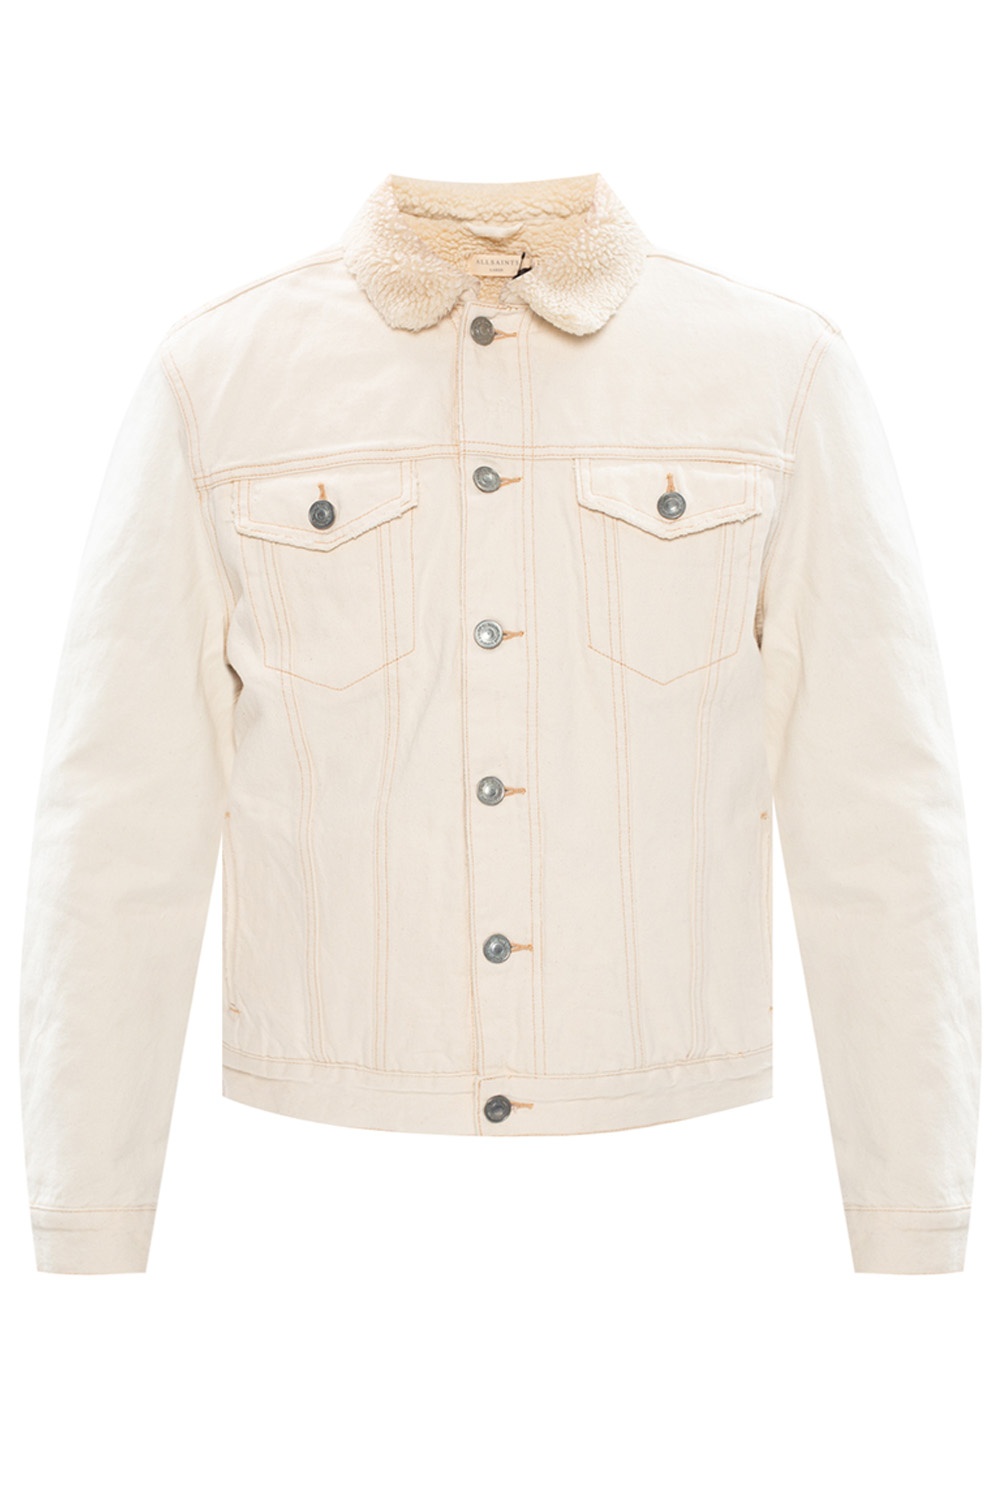 Plain White Denim Jacket For Men